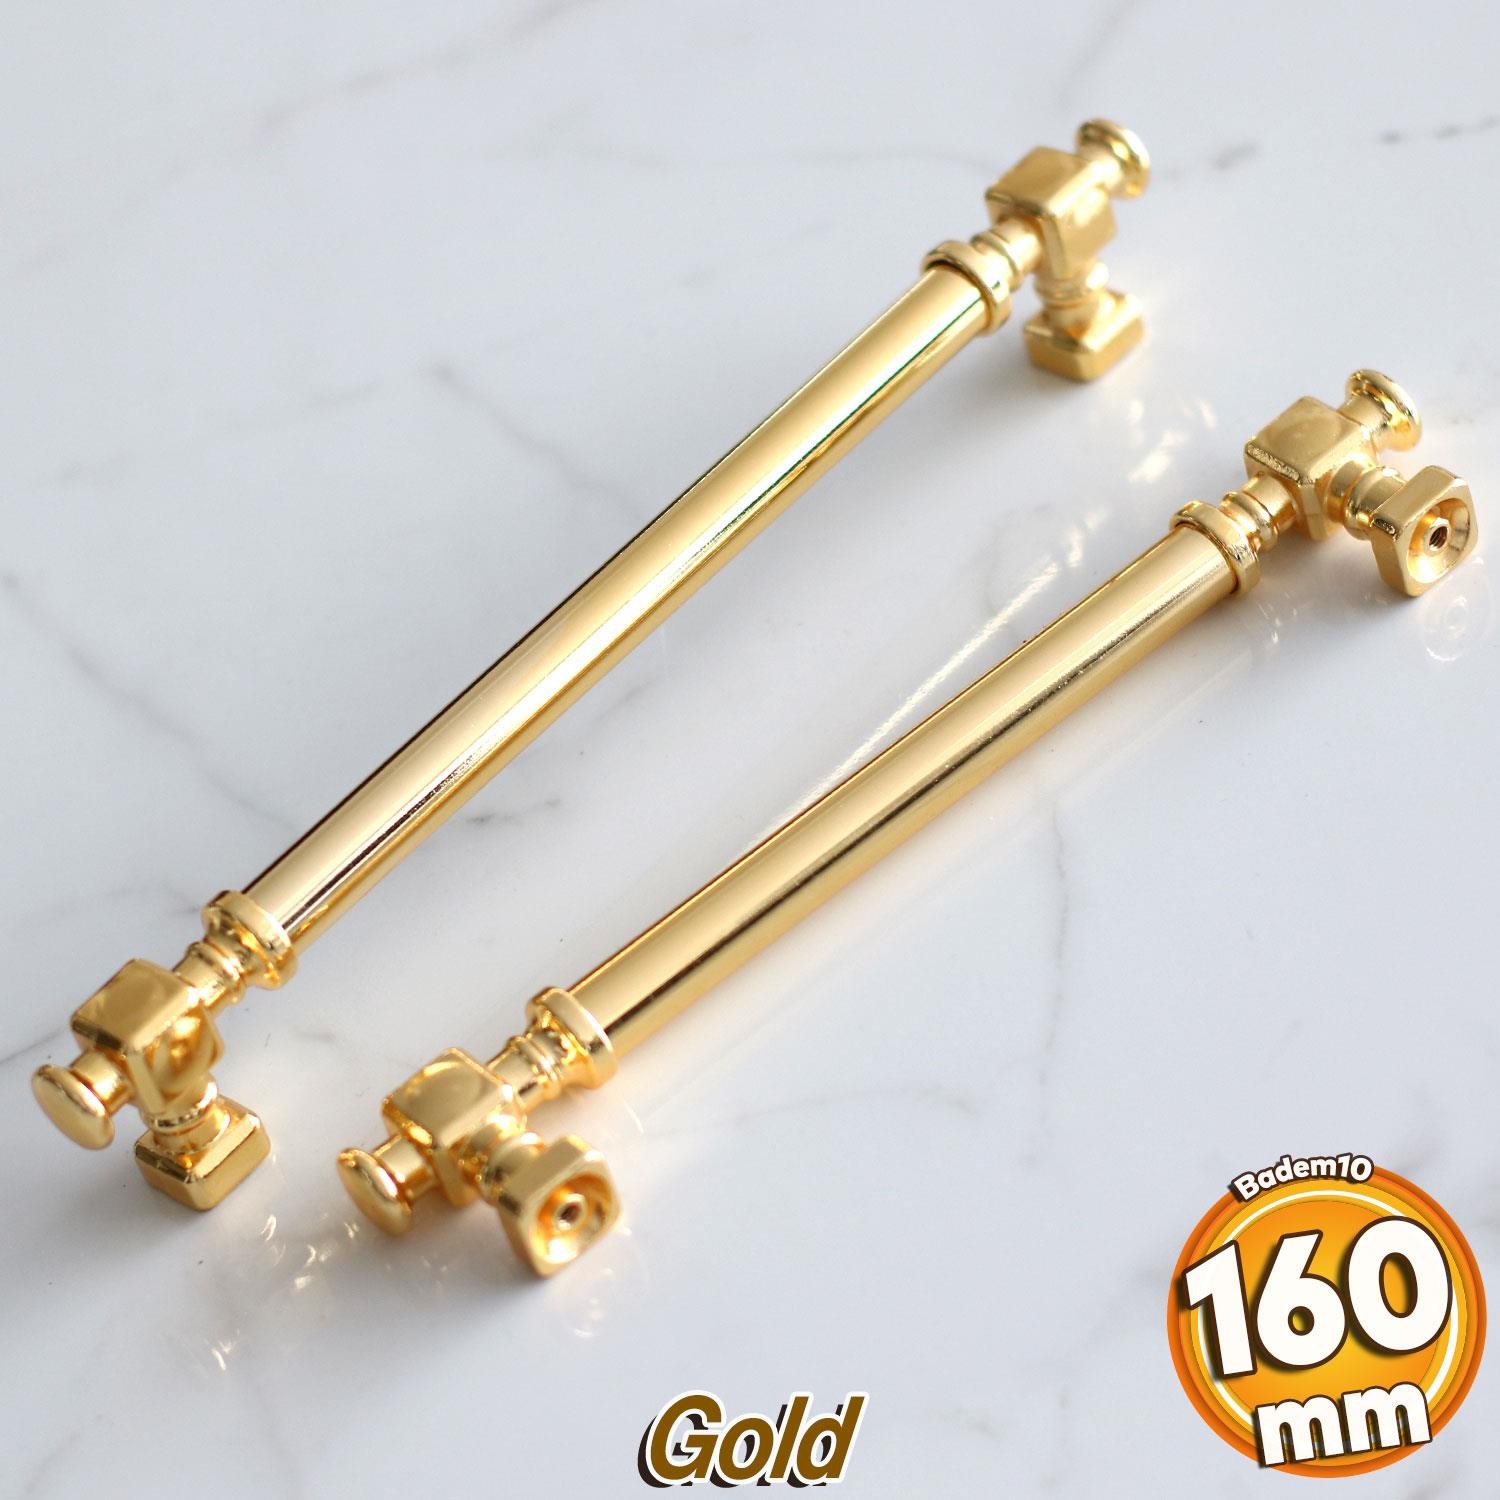 Talas Gold Altın Düz Metal Kulp 160 mm 16 cm Mobilya Çekmece Mutfak Dolabı Dolap Kulpları Kulb